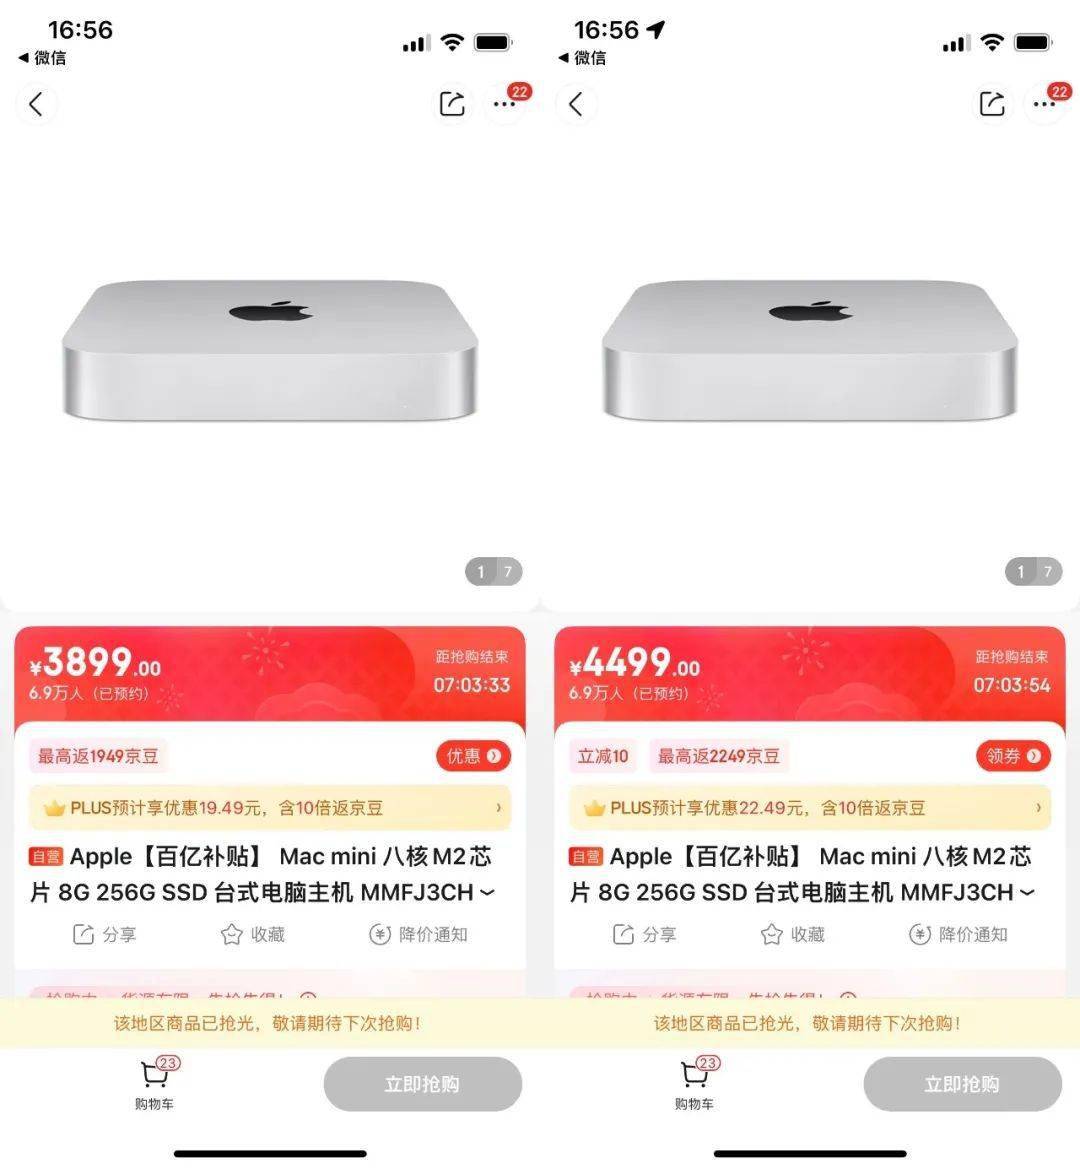 京东华为手机活动吗
:【行情】新款Mac mini未上市先优惠600元 但仅限部分城市